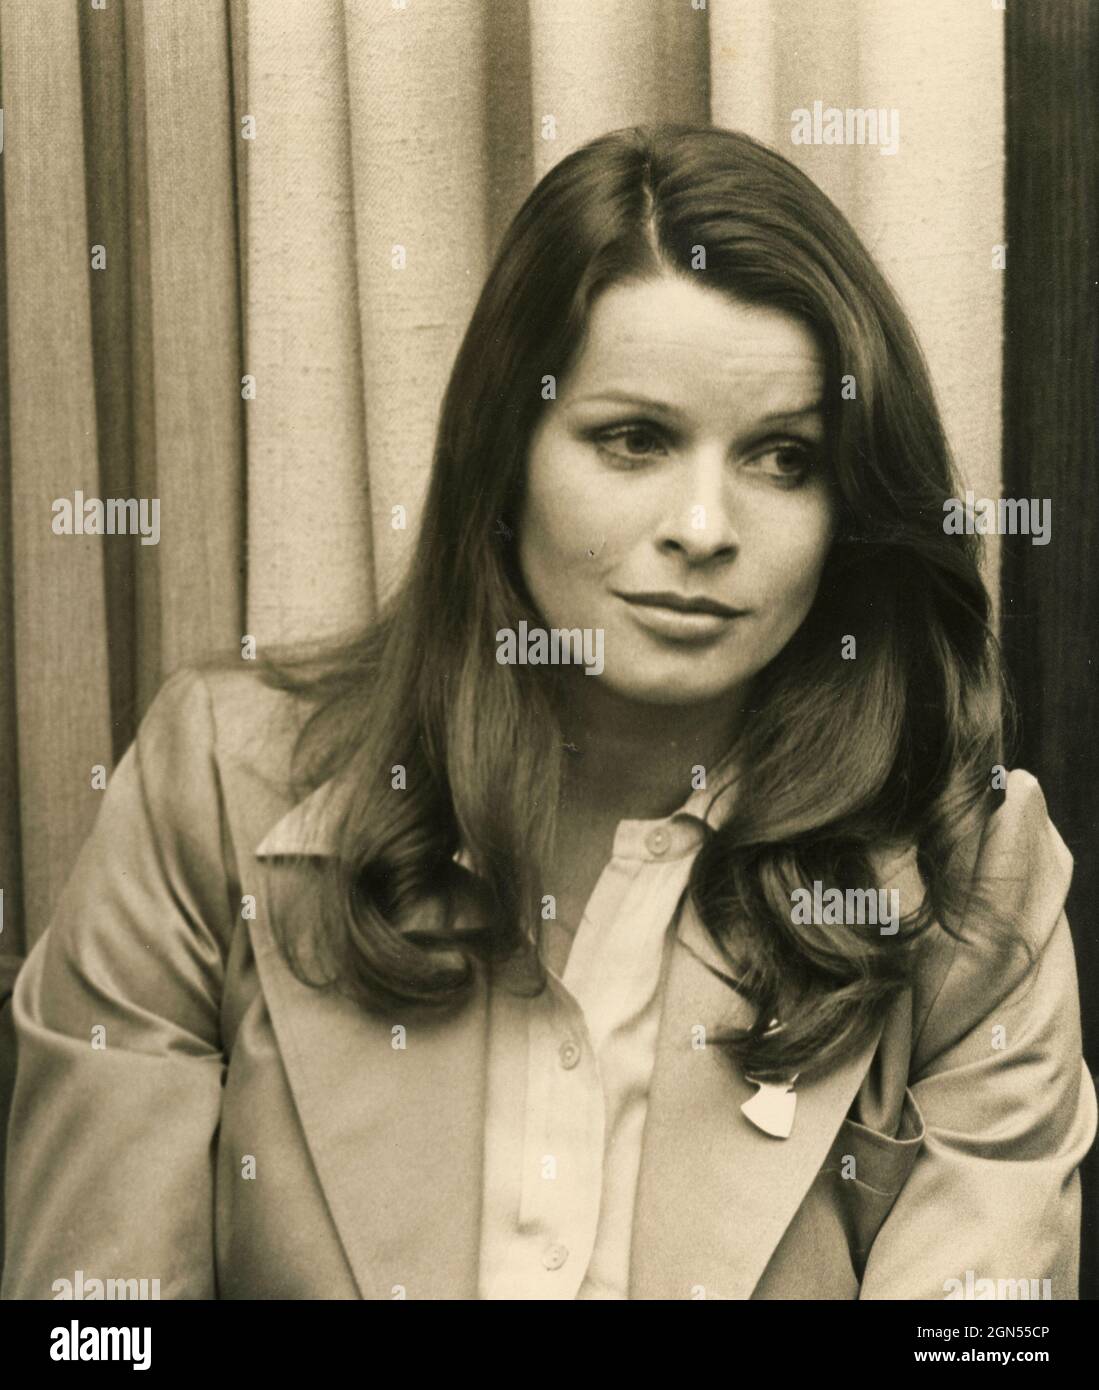 Austrian-German film actress Senta Berger, 1970s Stock Photo